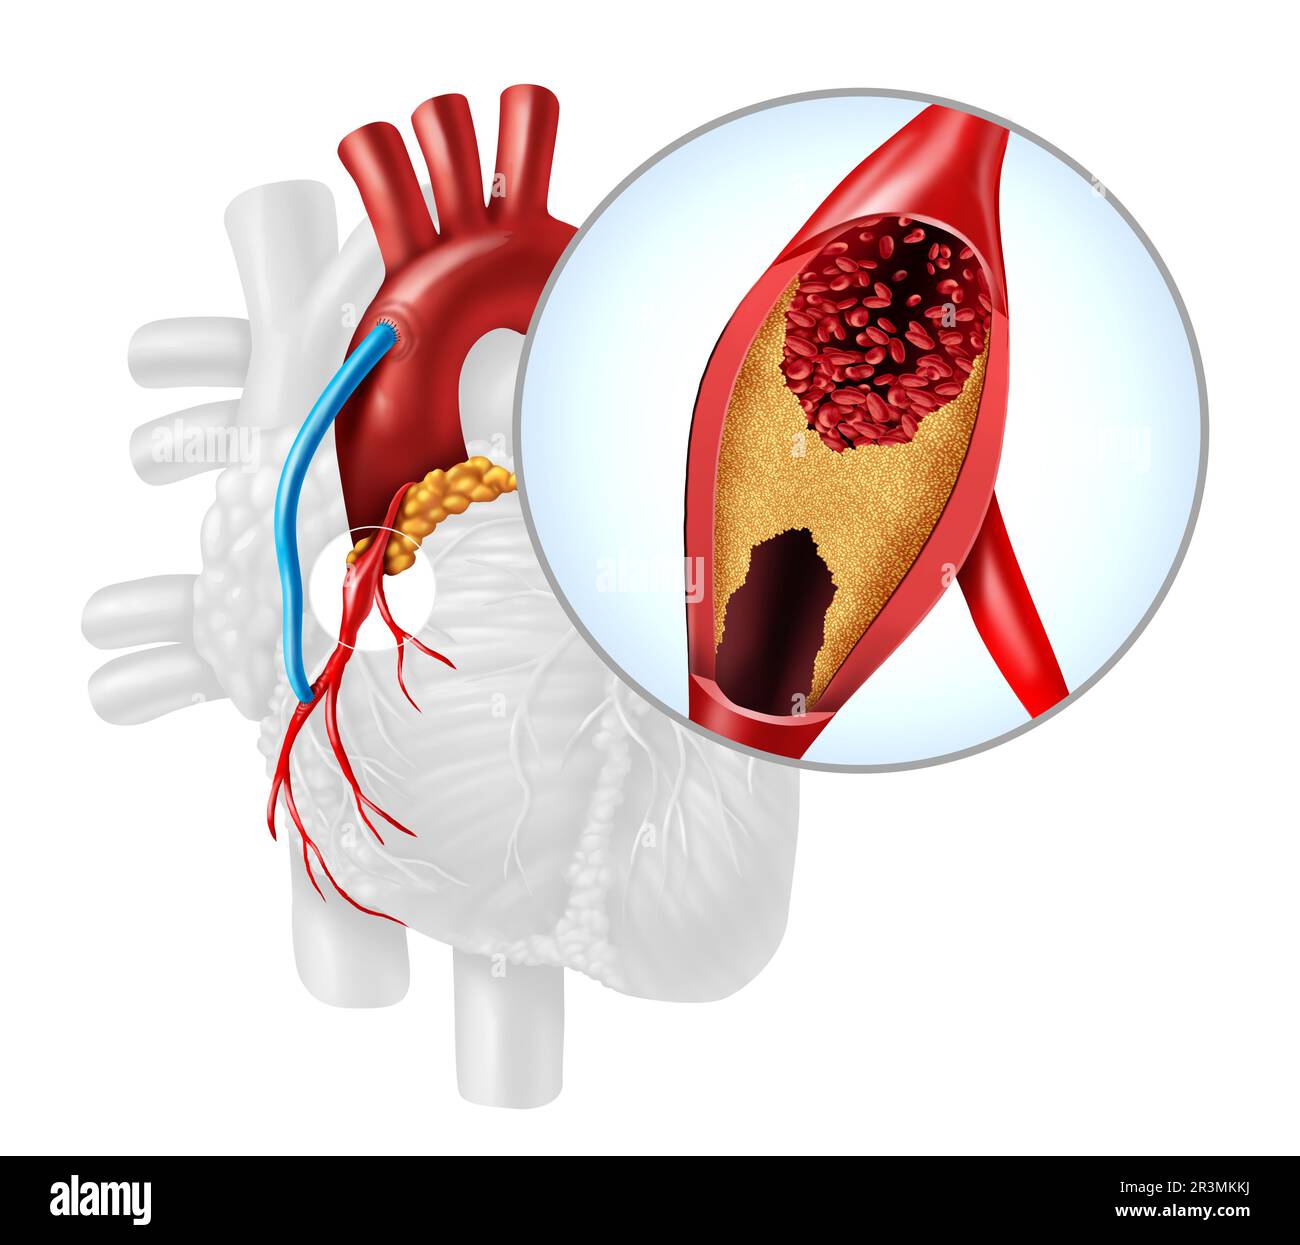 Bypass arteria cardiaca innesto o CABG come ostruzione della placca nell'arteria coronaria o arterie come vena da una gamba che è innestata a un cuore Foto Stock